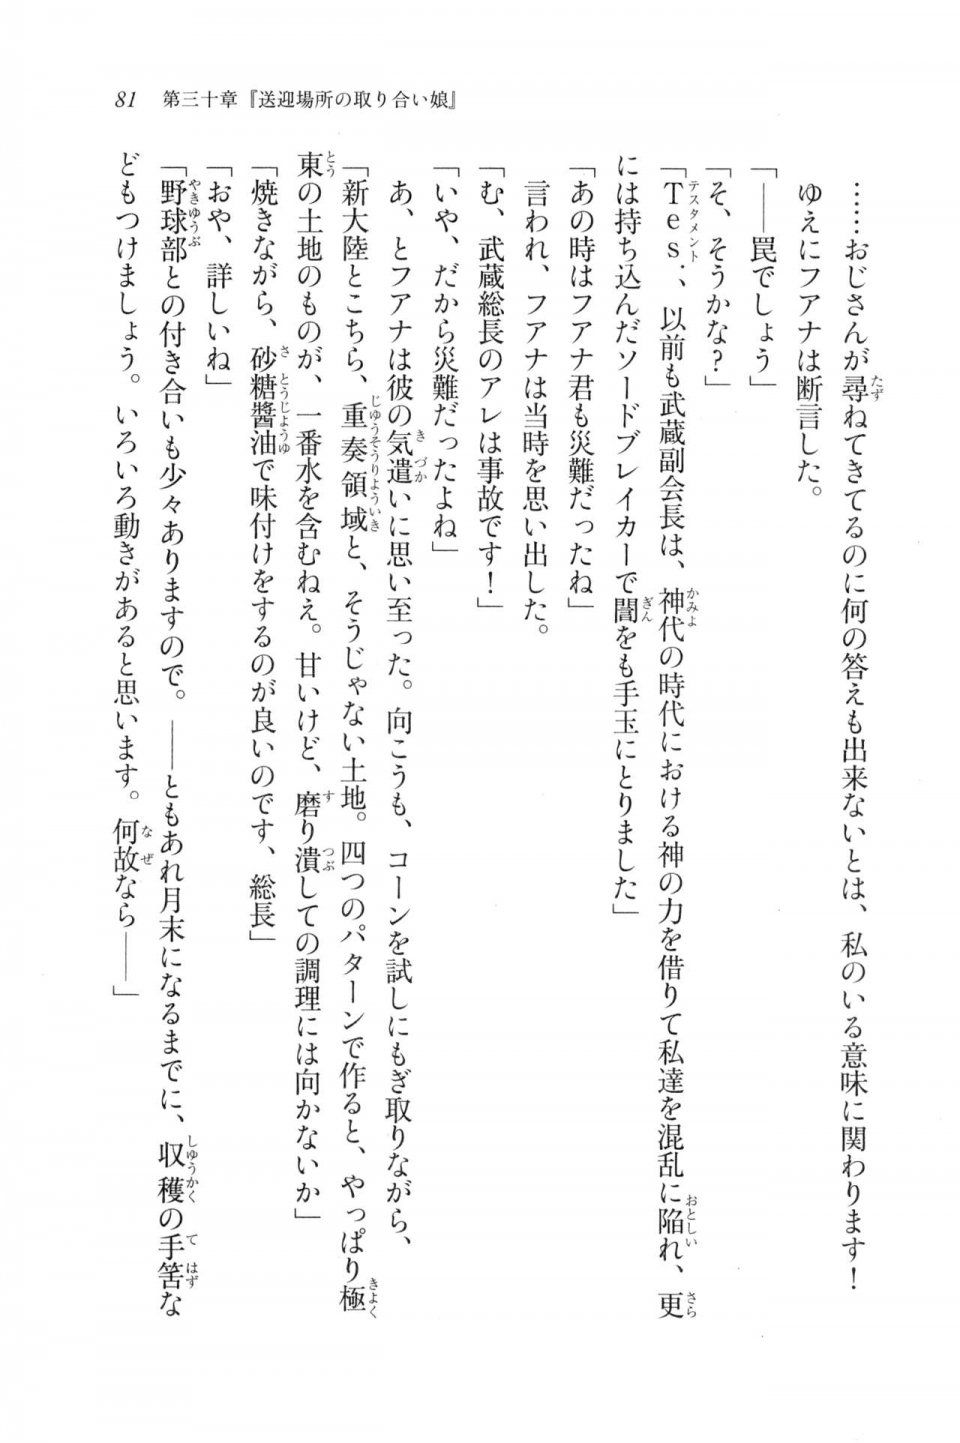 Kyoukai Senjou no Horizon LN Vol 20(8B) - Photo #81